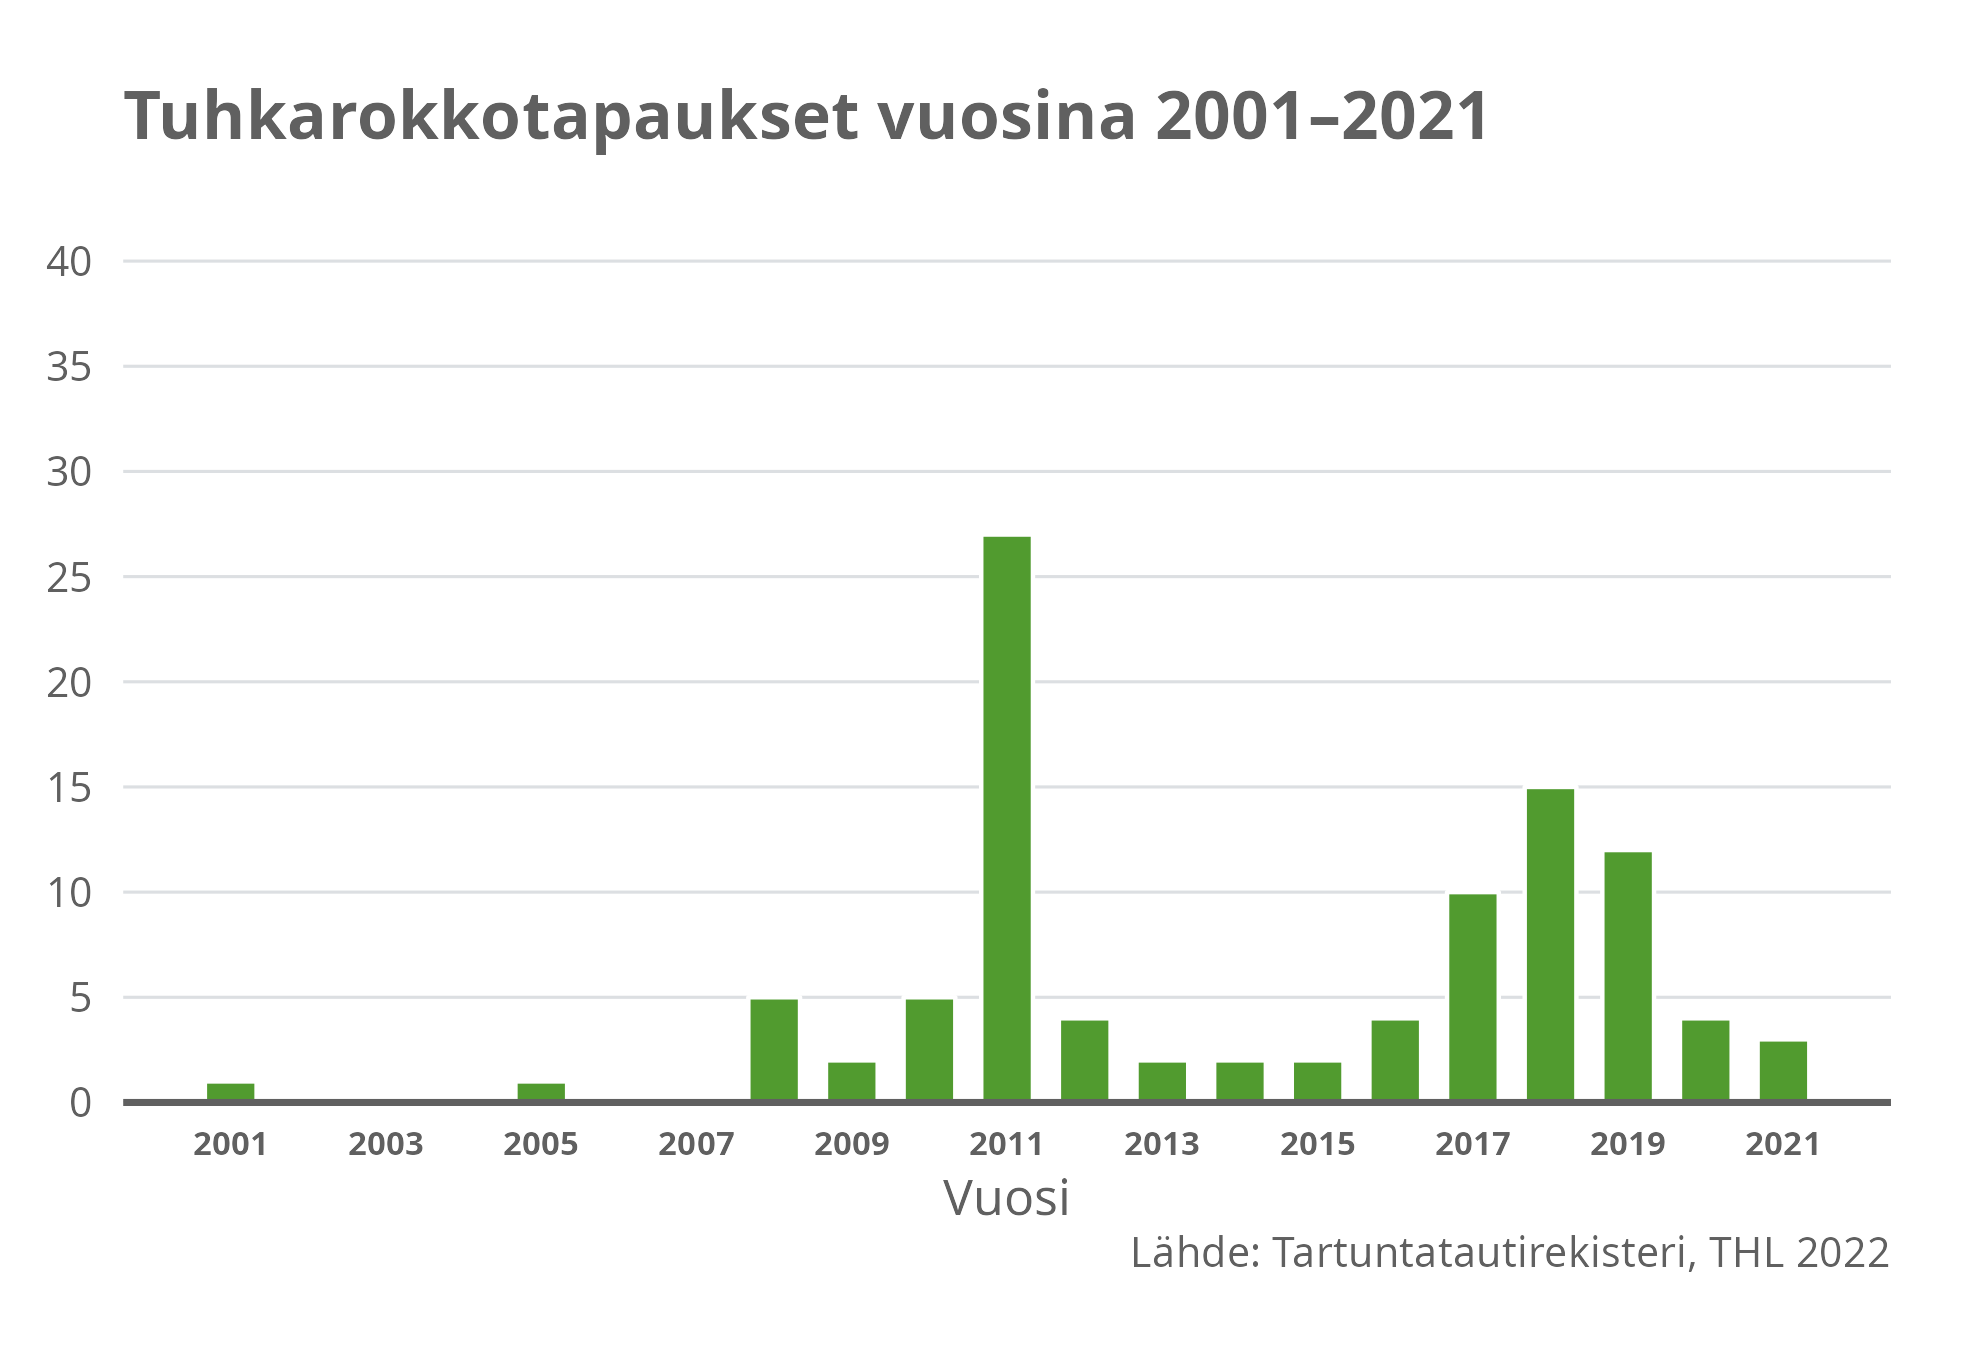 Tuhkarokkotapaukset vuosina 2001-2021.